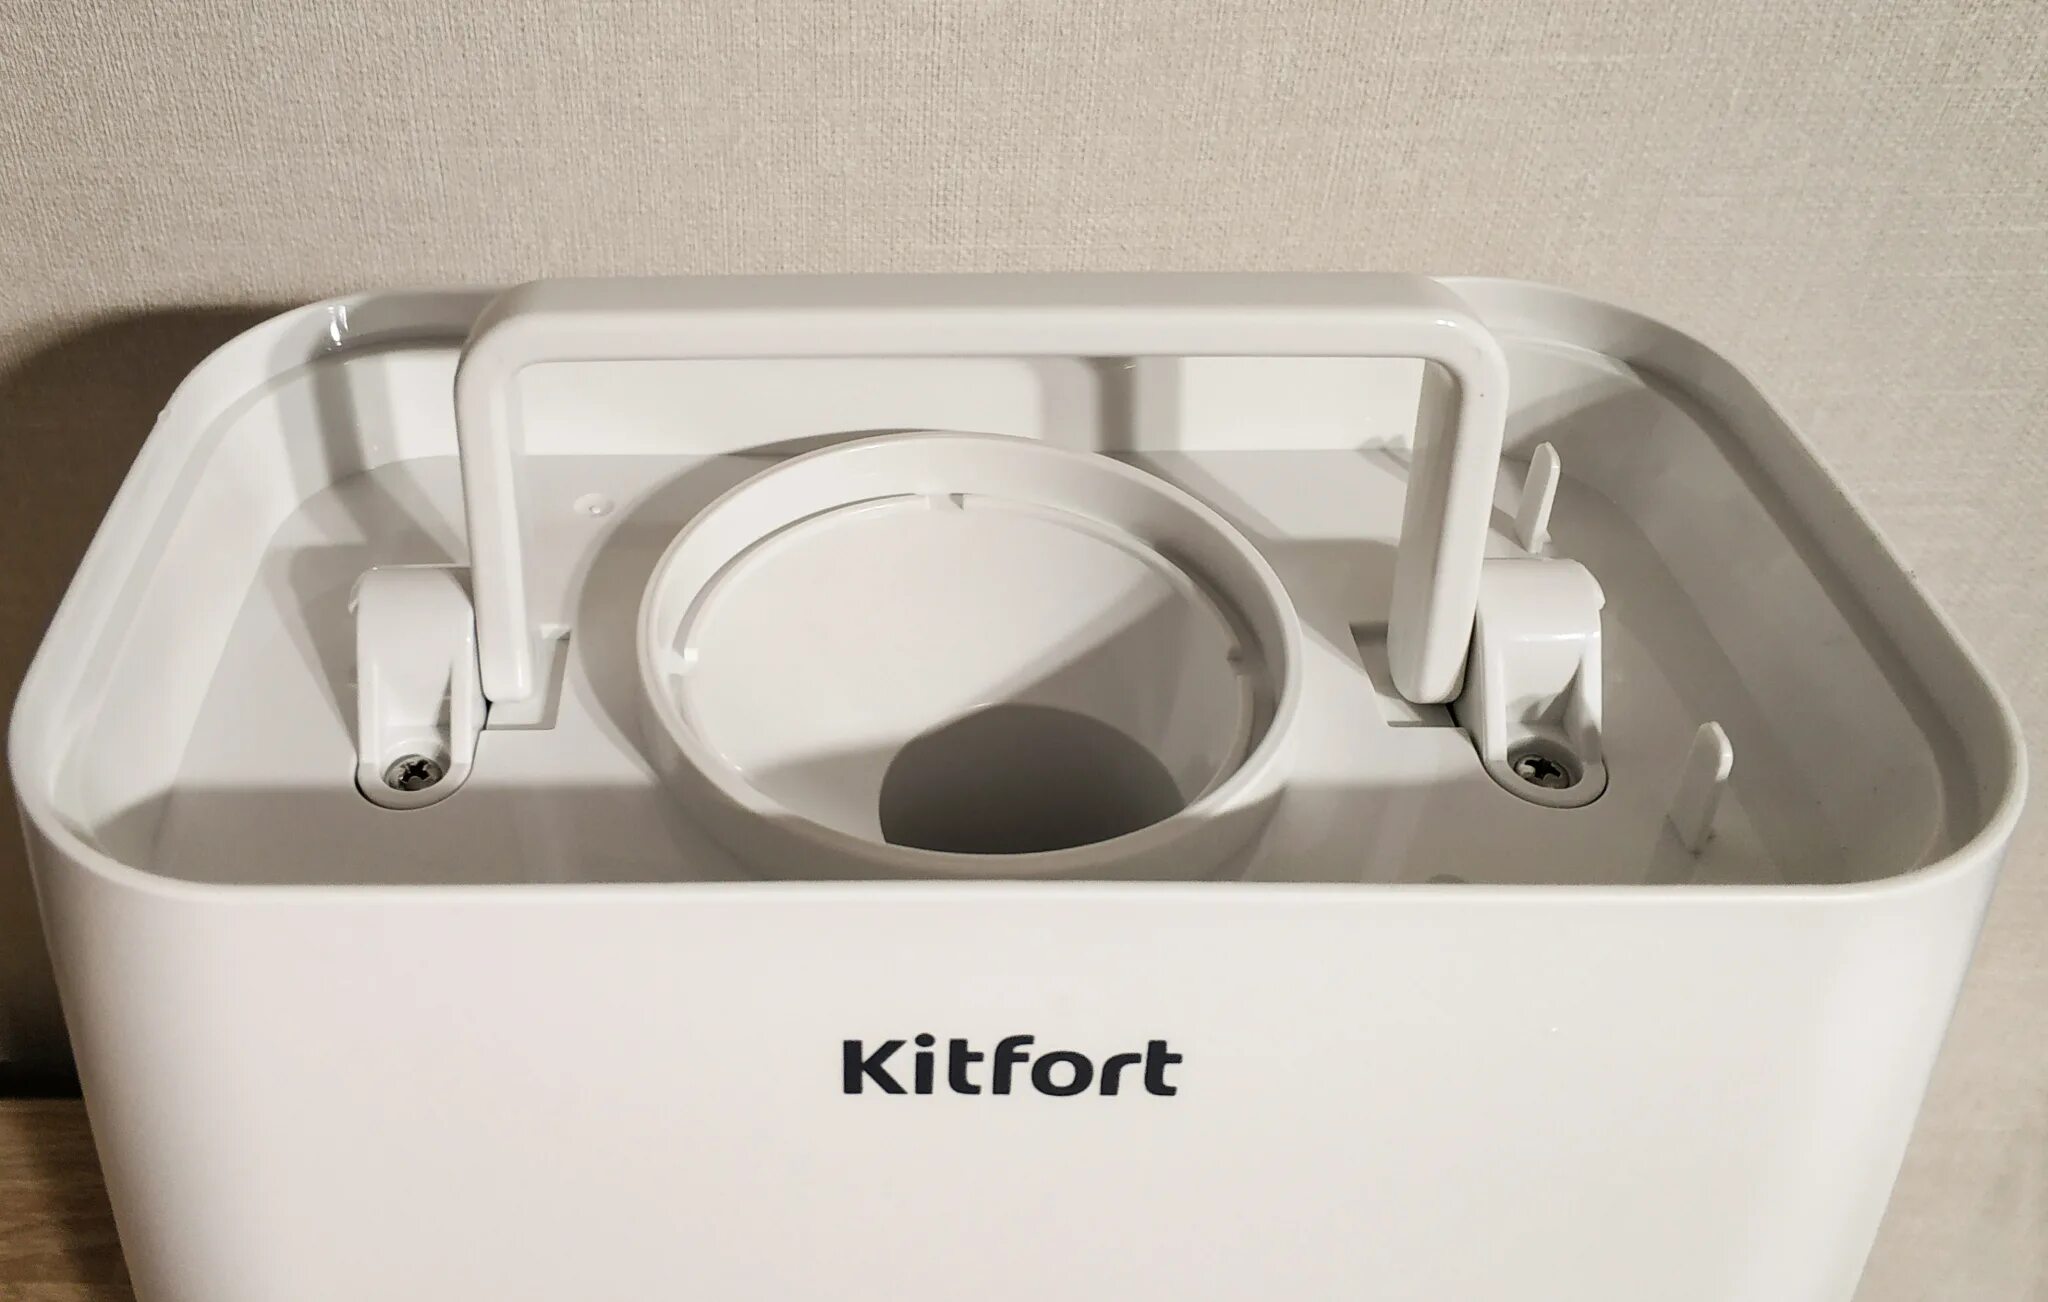 Kitfort кт 7105 1. Китфорт увлажнитель 2811. Kitfort KT-2811. Kitfort RT 2811. Kitfort кт-2800-10, для увлажнителя фильтр.